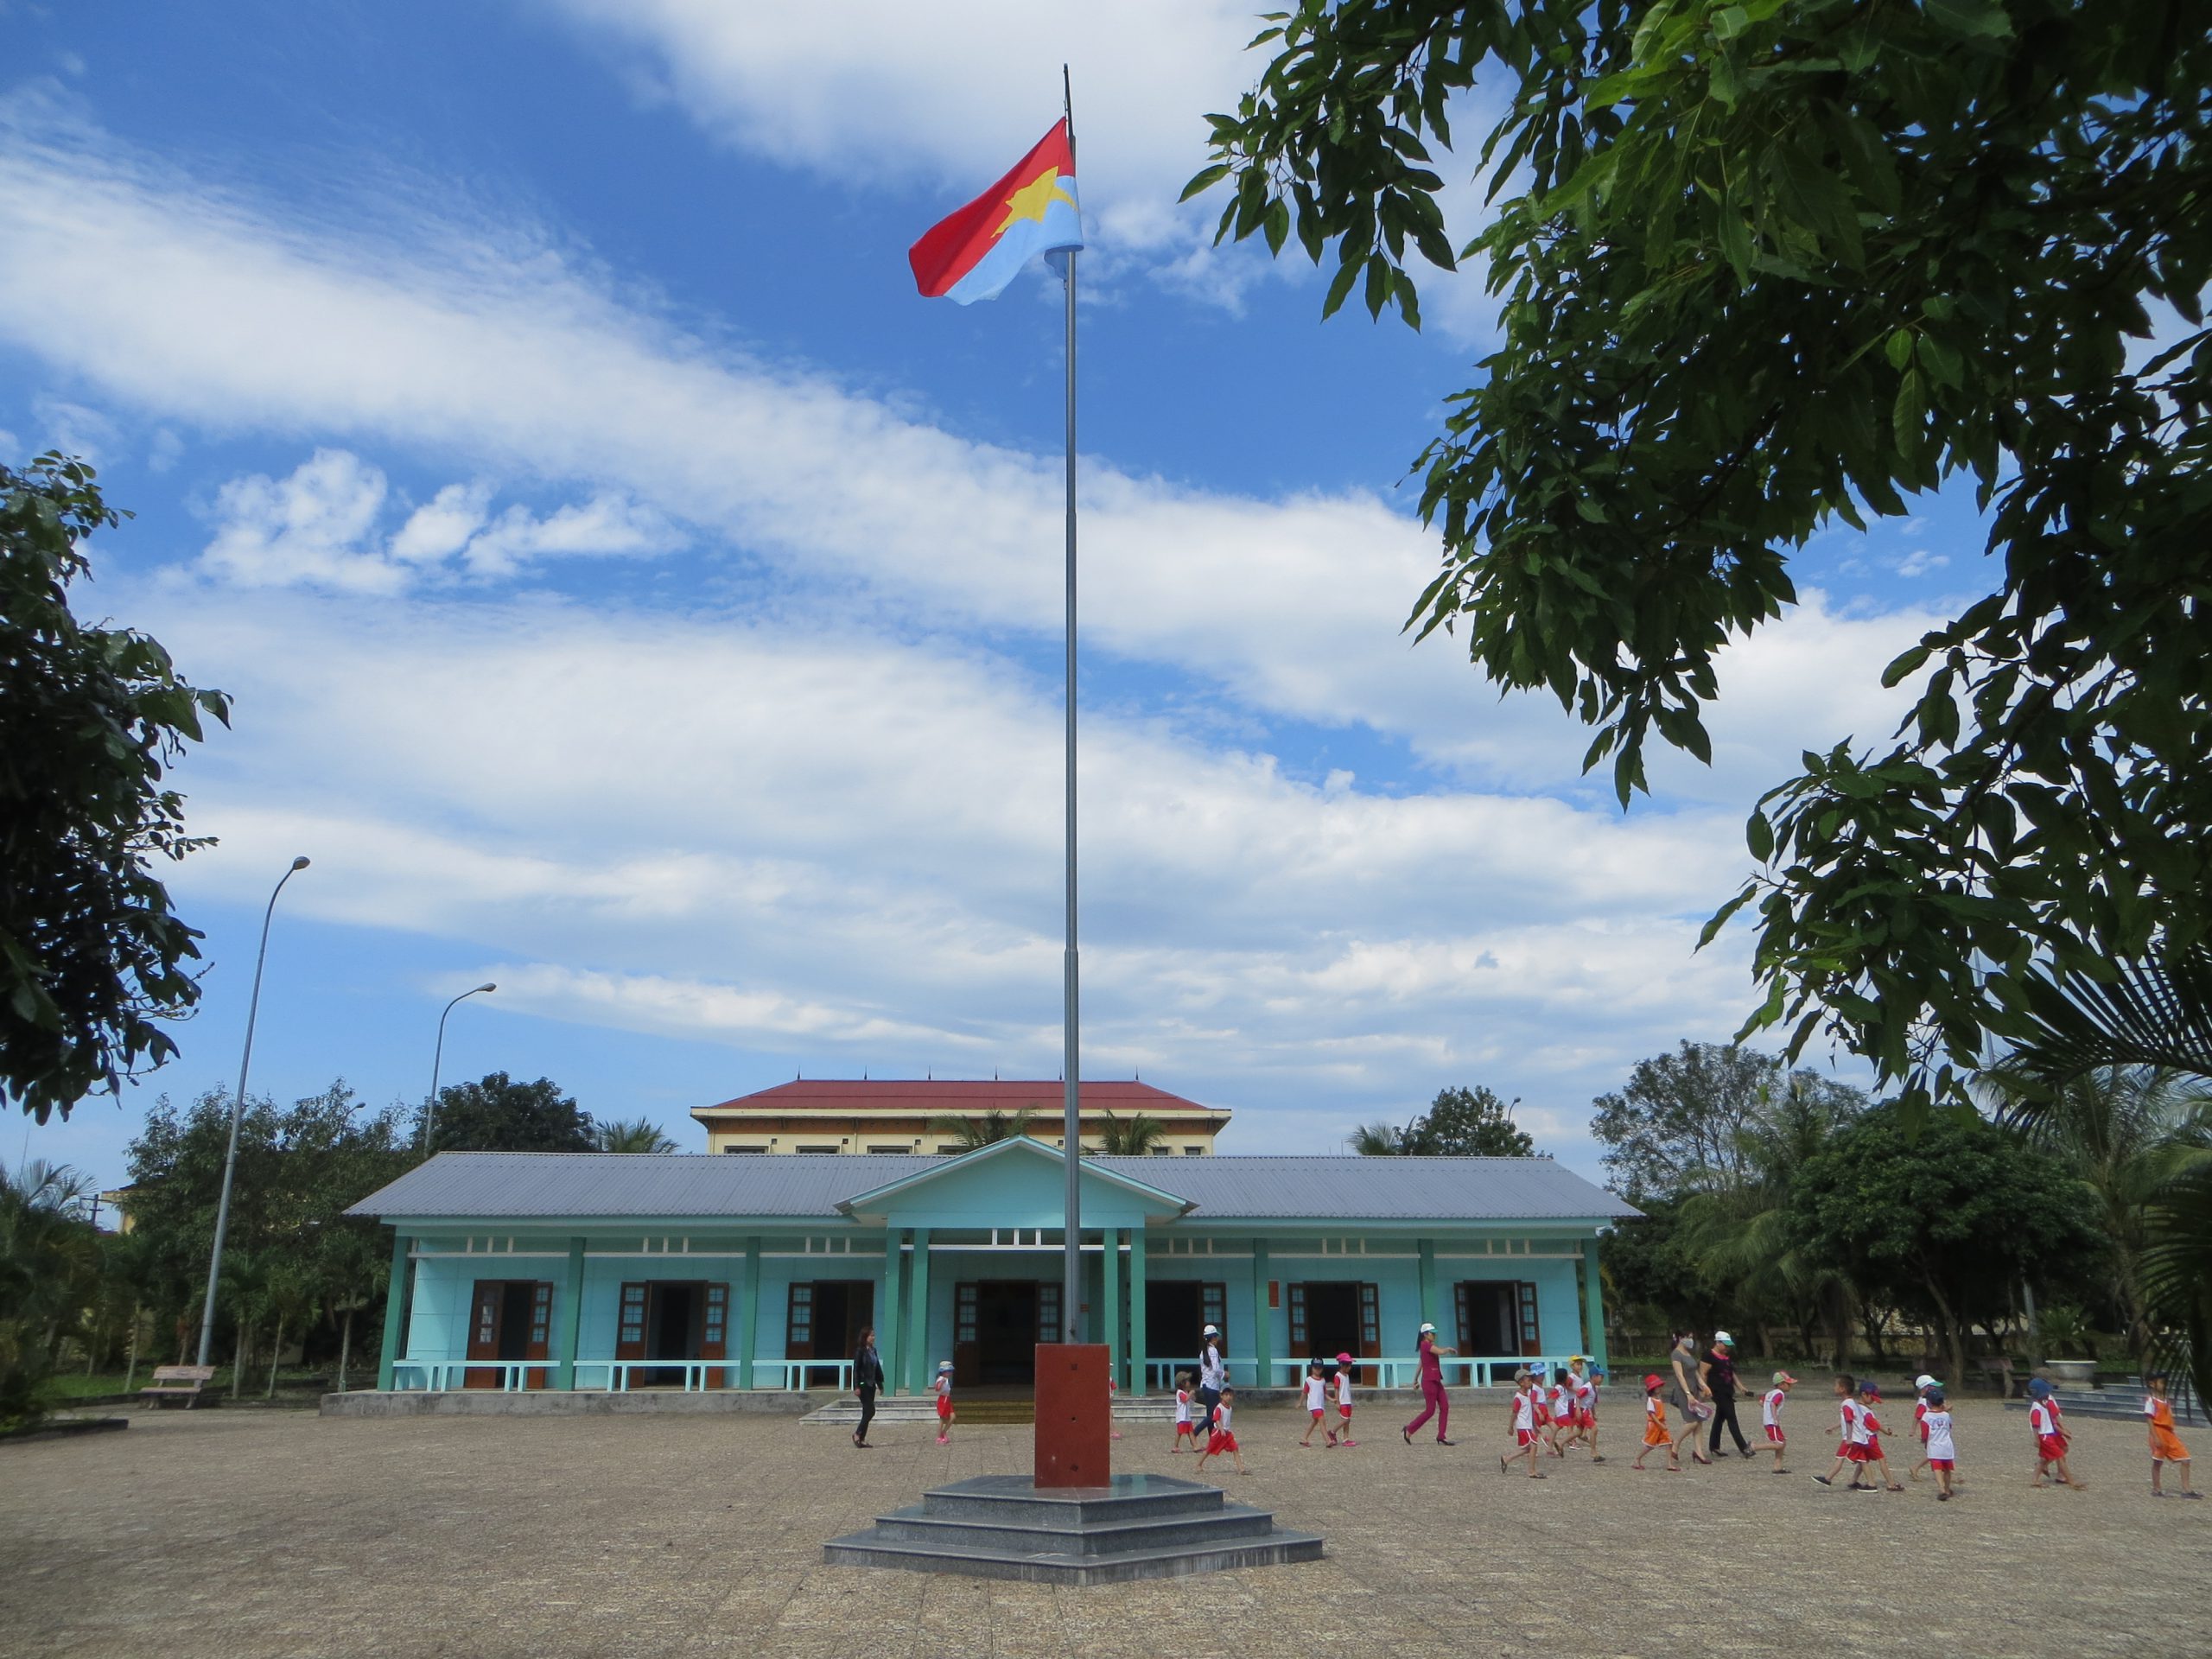 Lấy cảm hứng từ kiến trúc Pháp, trụ sở Chính phủ Cách mạng Lâm thời của miền Nam Việt Nam là một tòa nhà hoành tráng và đầy tính thẩm mỹ. Hãy xem hình ảnh liên quan để tìm hiểu về sự đẳng cấp và danh giá của tòa nhà này trong lịch sử Việt Nam.